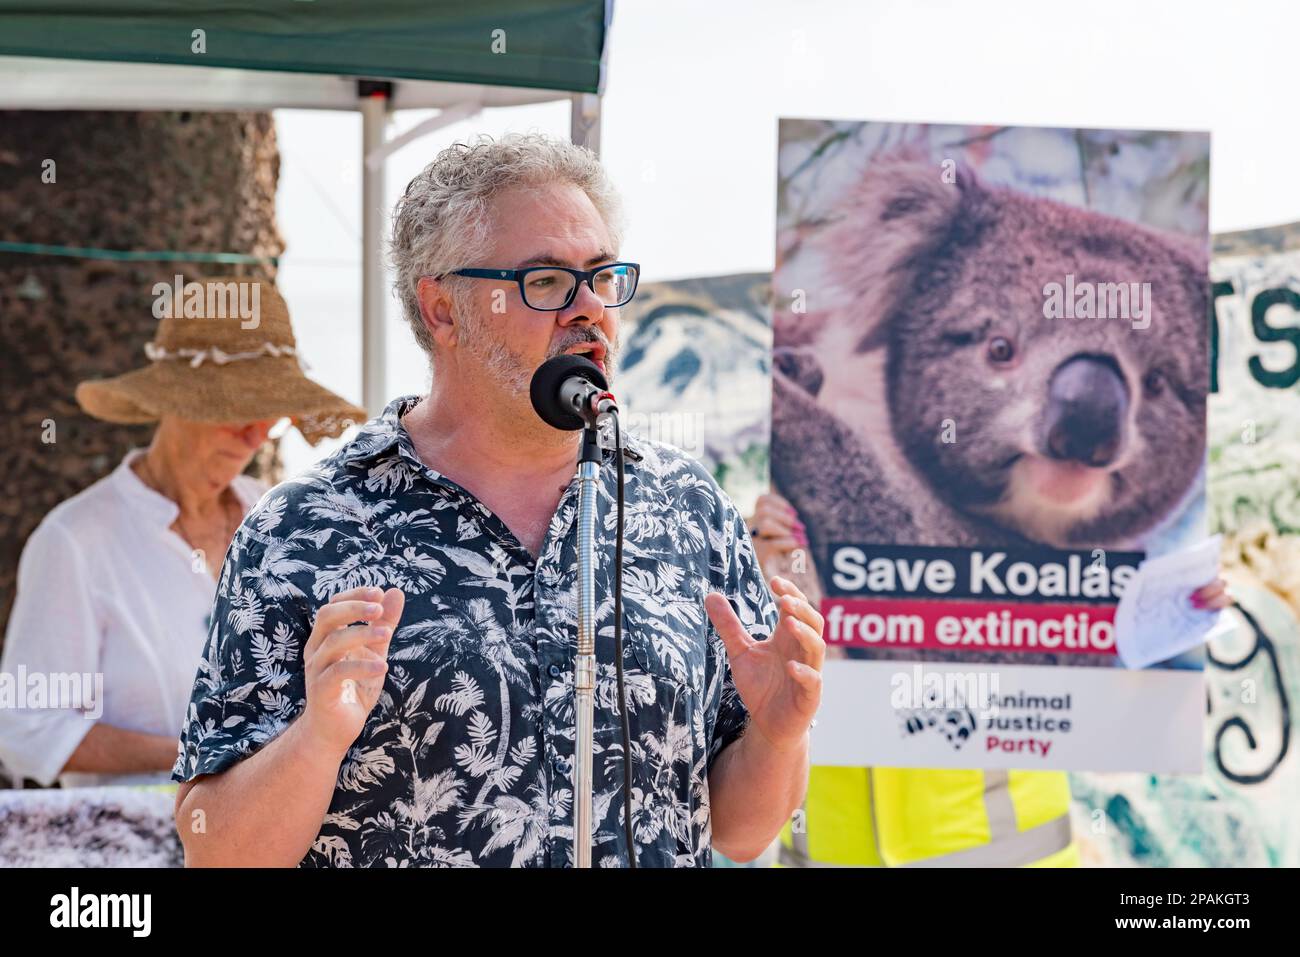 Saul Deane, del Centro de Medio Ambiente Total, habló sobre la destrucción de hábitats de Koala en el sur de Sídney en una reunión de protesta en Manly Beach para salvar a los Koalas en Nueva Gales del Sur. El evento fue organizado por miembros de la Fundación Bob Brown. Los oradores en la reunión pidieron el fin de la tala de bosques nativos y la creación de un parque nacional Koala en la costa norte. Crédito: Stephen Dwyer / Alamy Live News Foto de stock